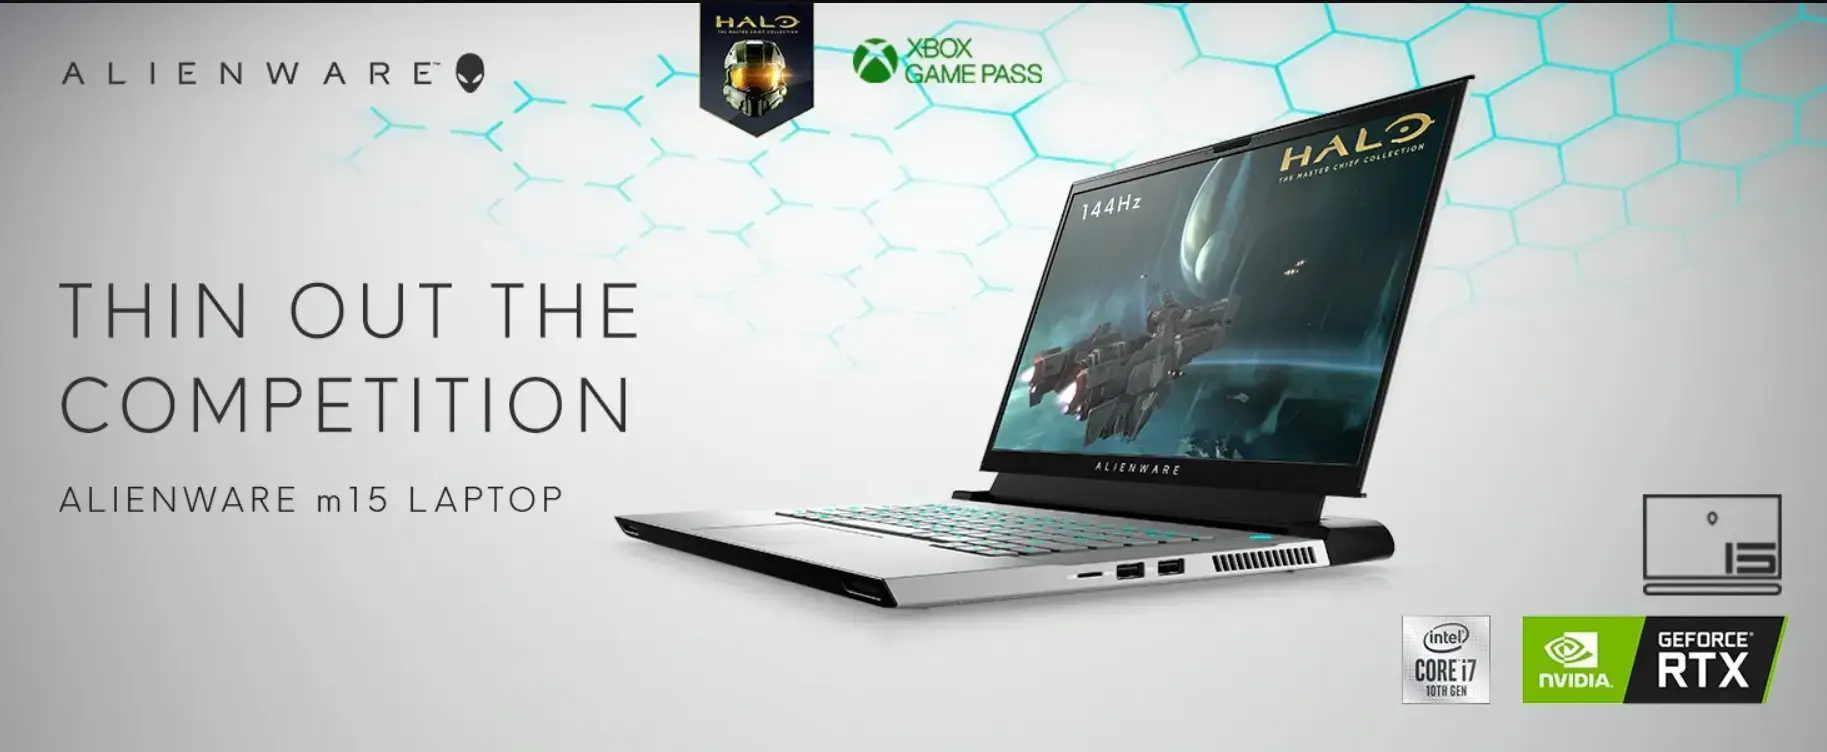 Best Gaming Laptop Brands Alienware